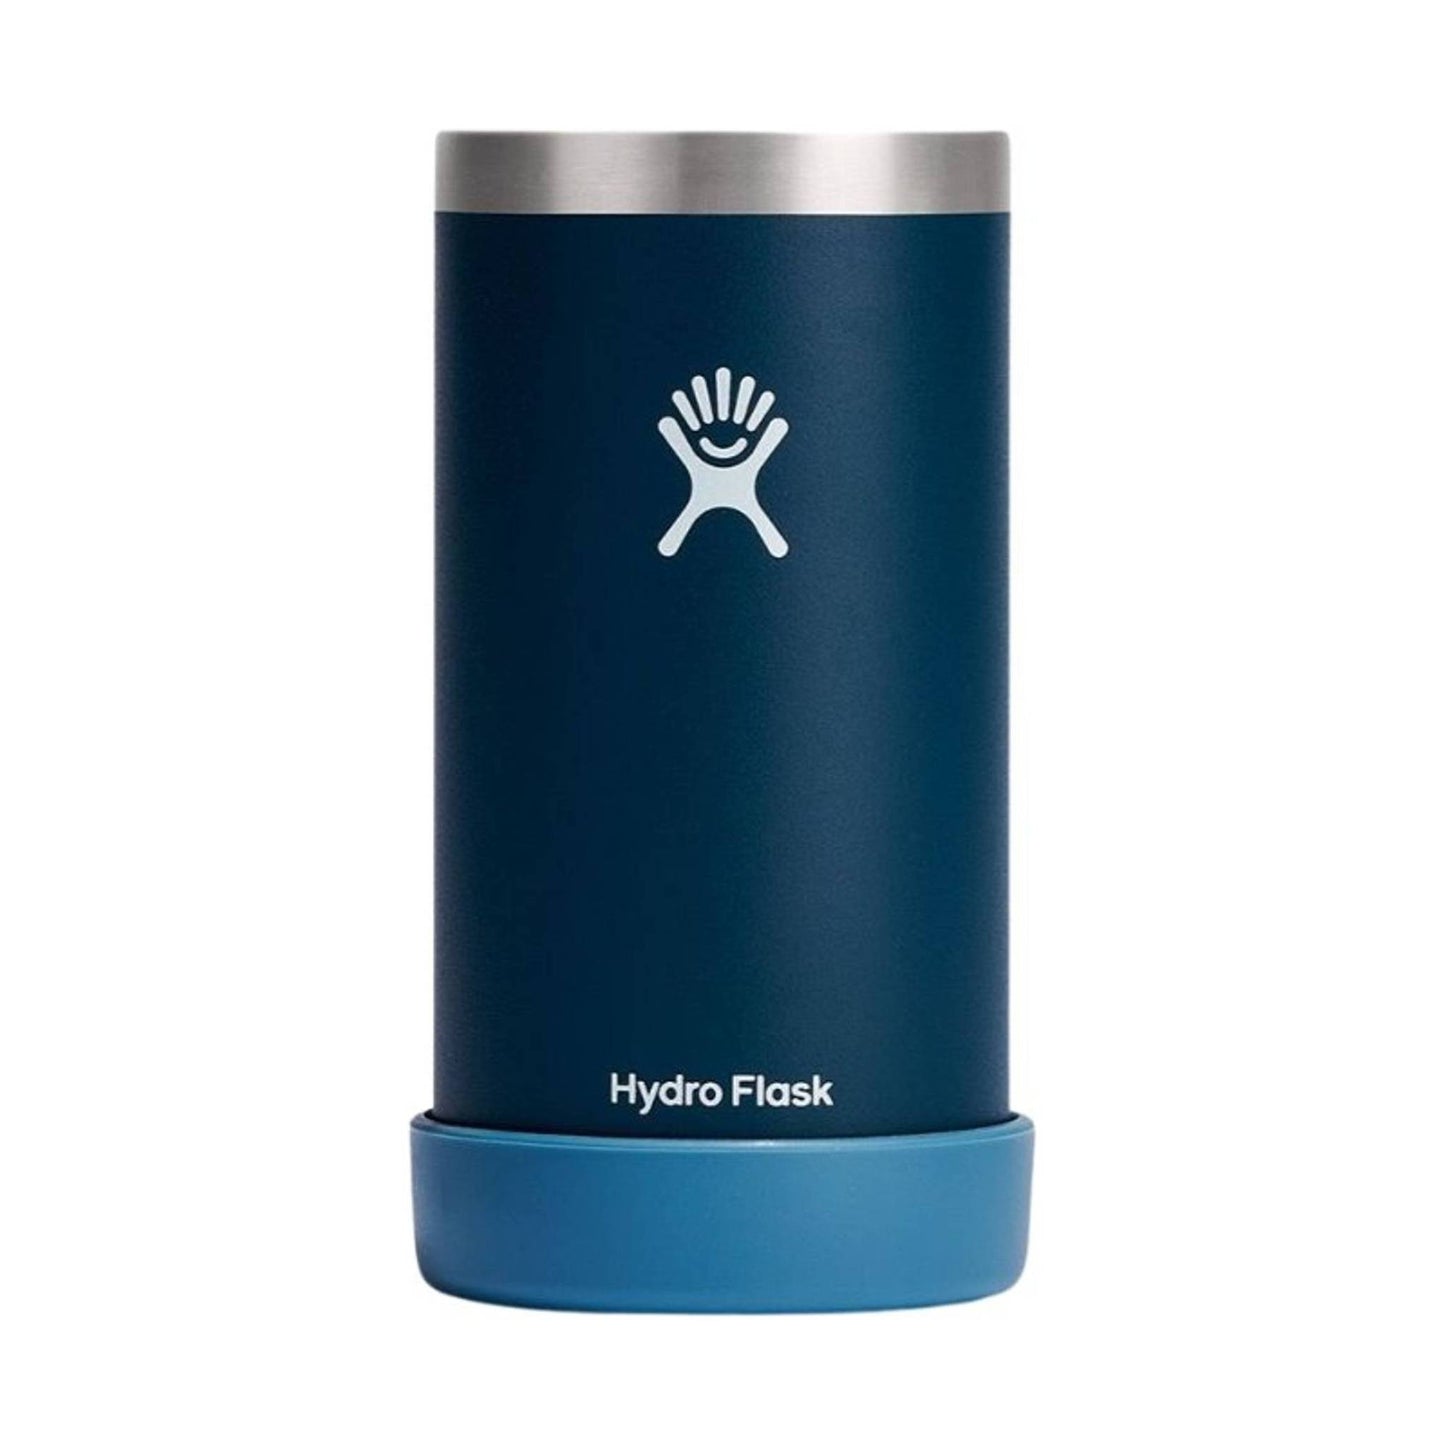 Hydro Flask 16 oz Tallboy Cooler Cup - Indigo